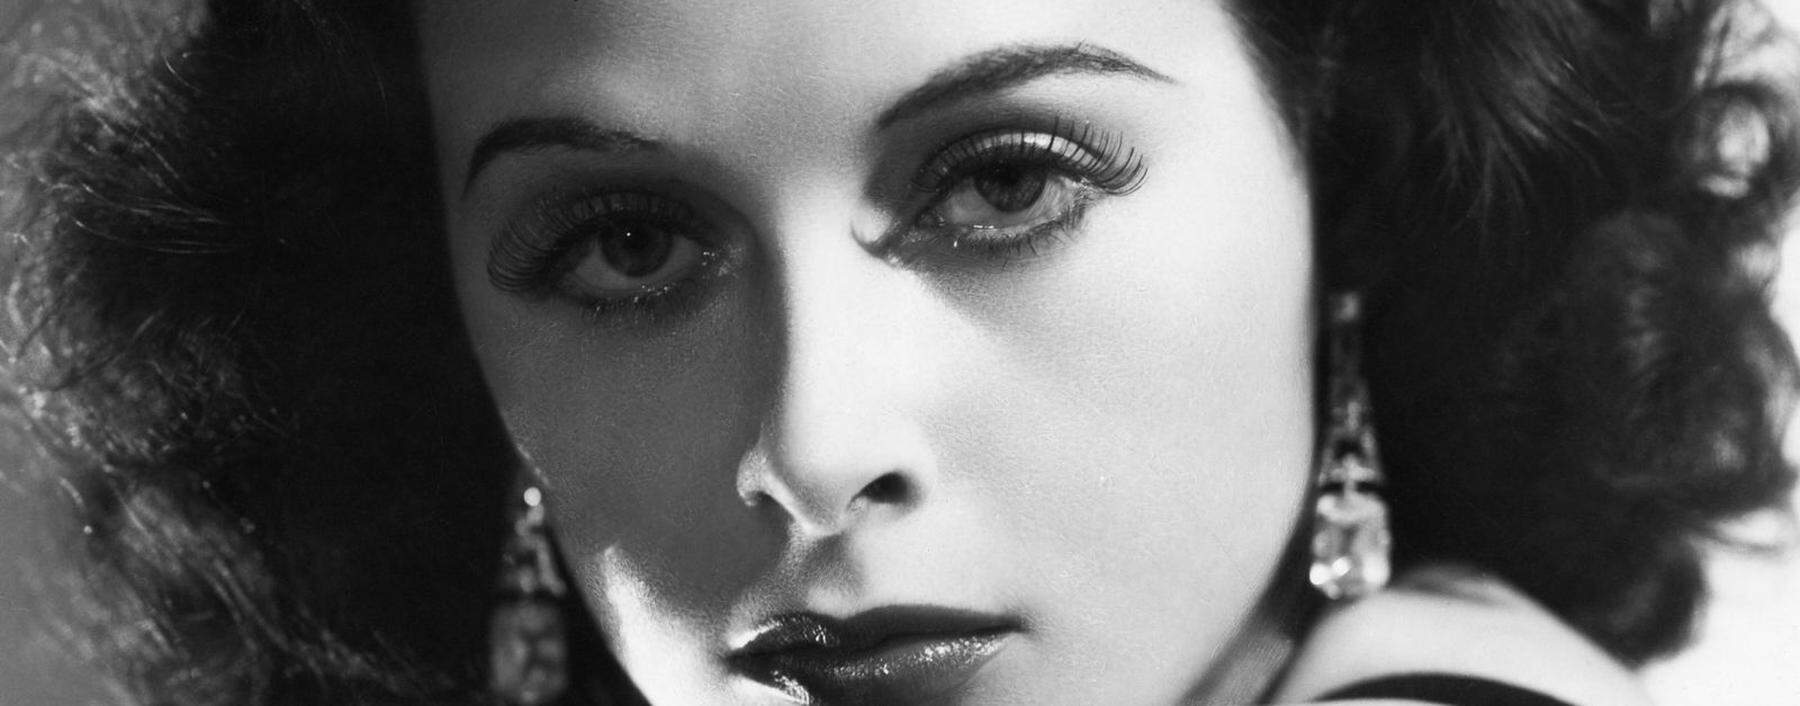 Ein Buch, das in schönen Bildern schwelgen kann: Hedy Lamarr, die Hollywoodikone.